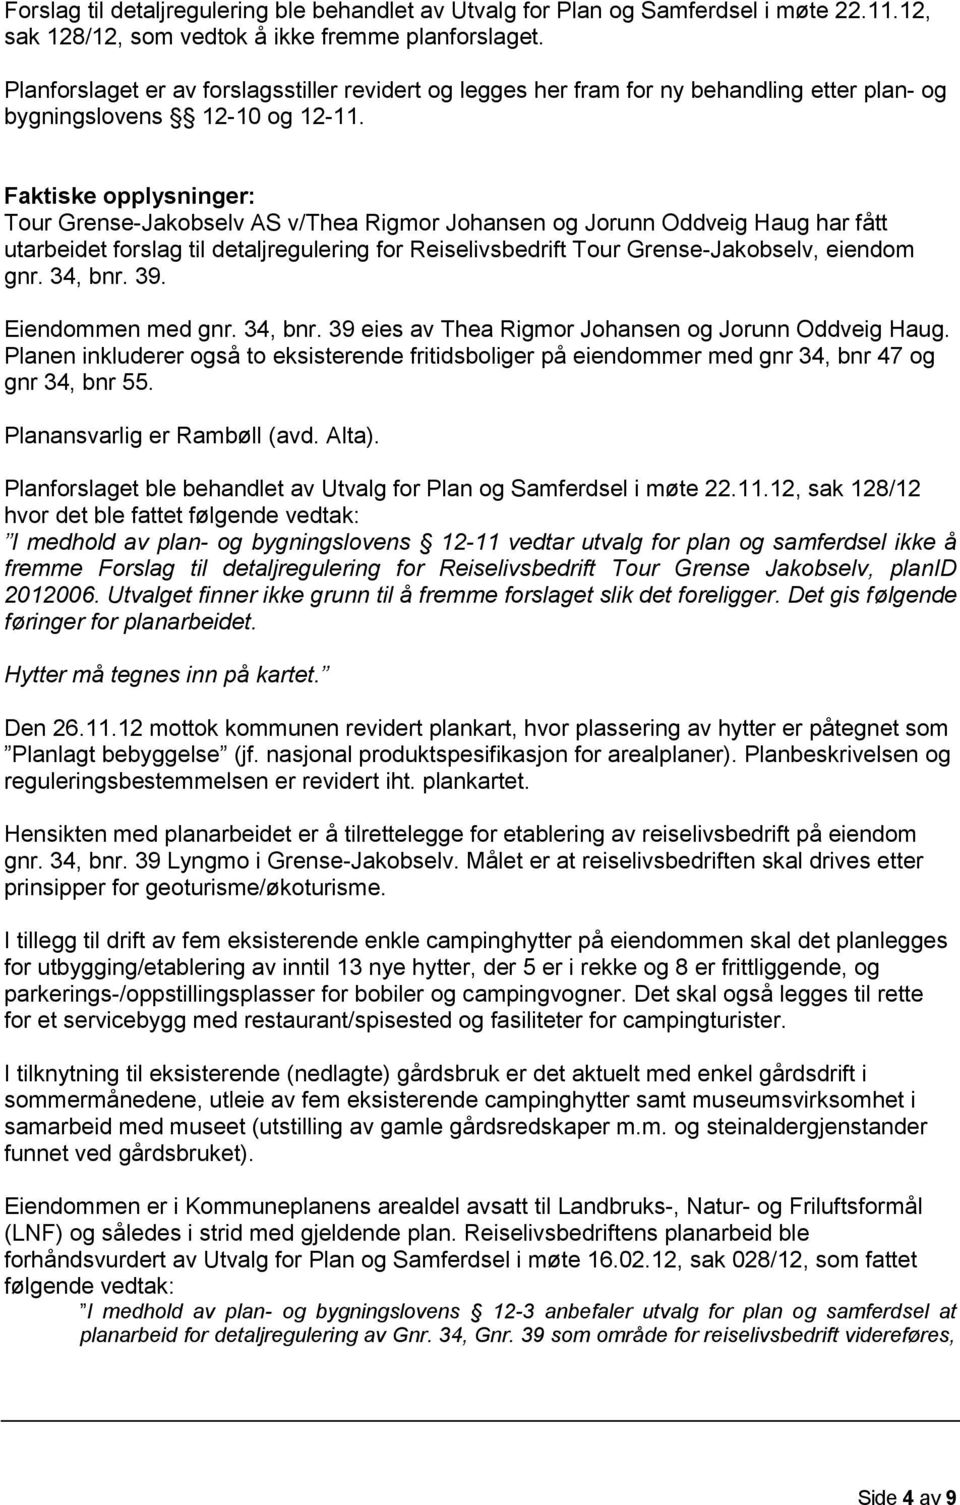 Faktiske opplysninger: Tour Grense- Rigmor Johansen og Jorunn Oddveig Haug har fått utarbeidet forslag til detaljregulering for Reiselivsbedrift Tour Grense-Jakobselv, eiendom gnr. 34, bnr. 39.